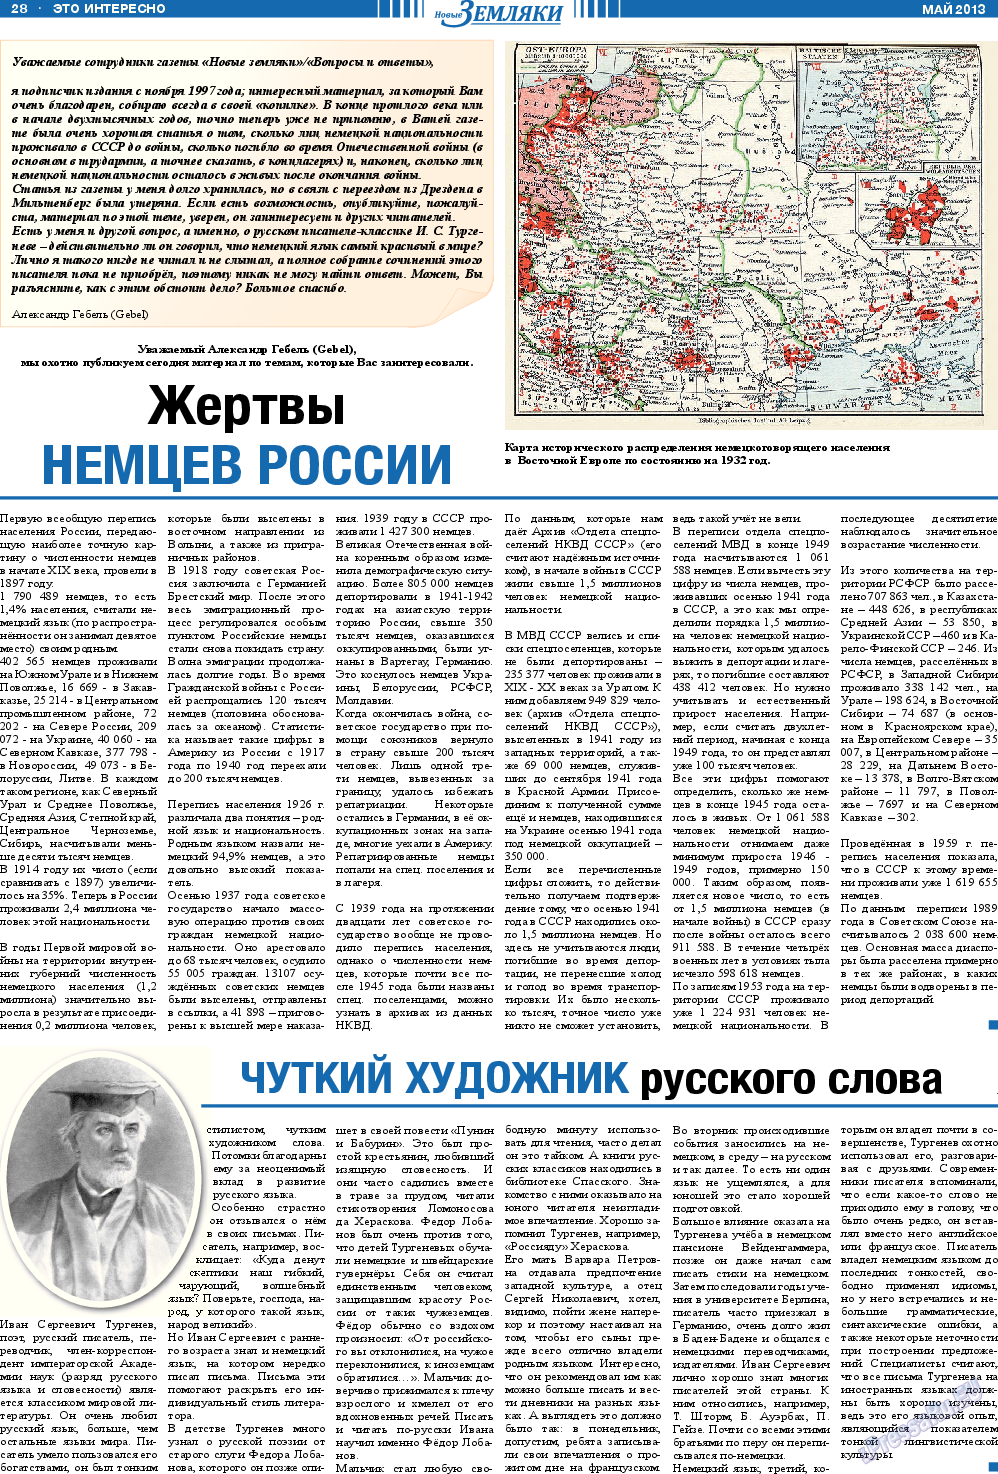 Новые Земляки, газета. 2013 №5 стр.28